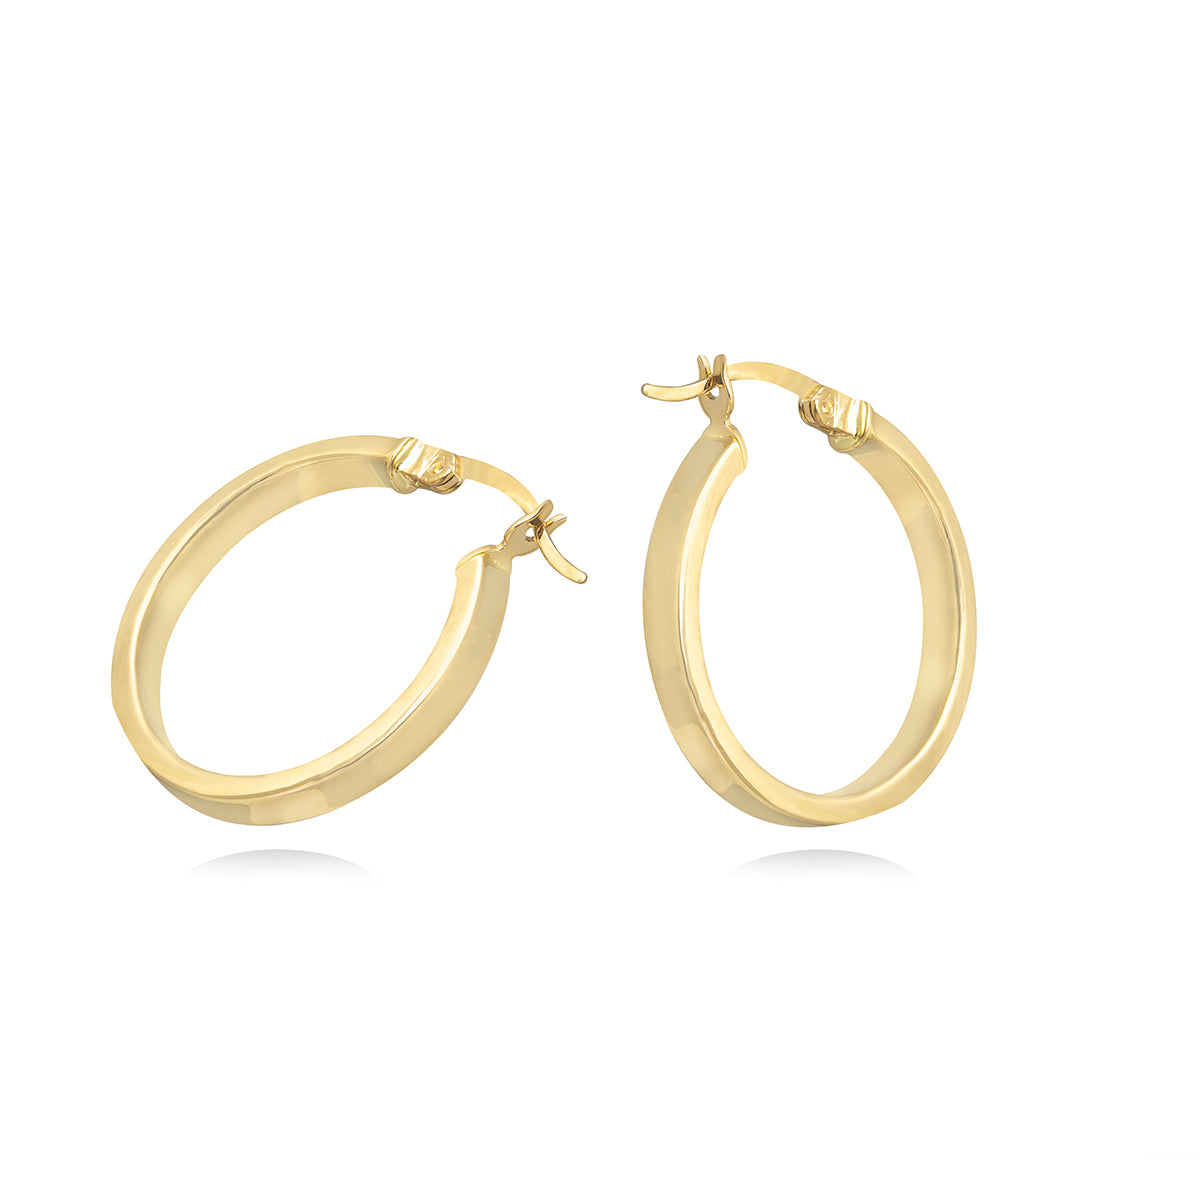 Classic Hoop Earrings in 18k Yellow Gold